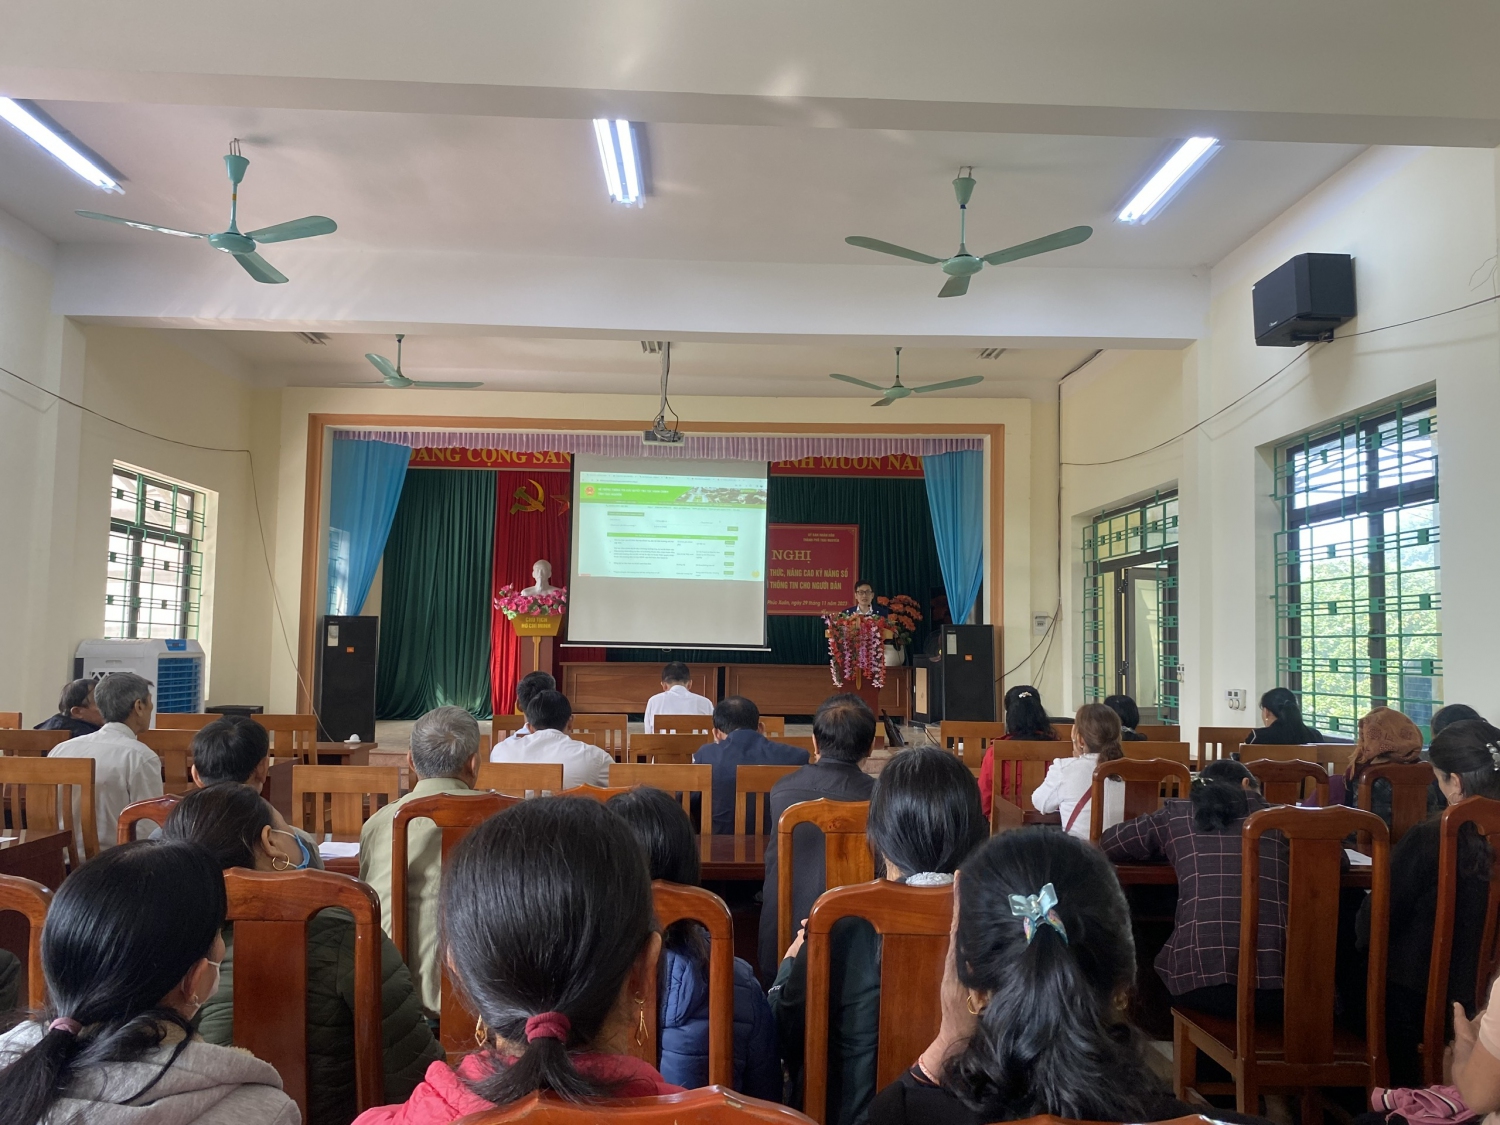 Hỗ trợ thực hiện chương trình phổ biến kiến thức, nâng cao kỹ năng số và năng lực tiếp cận thông tin cho người dân nông thôn trên địa bàn thành phố Thái Nguyên